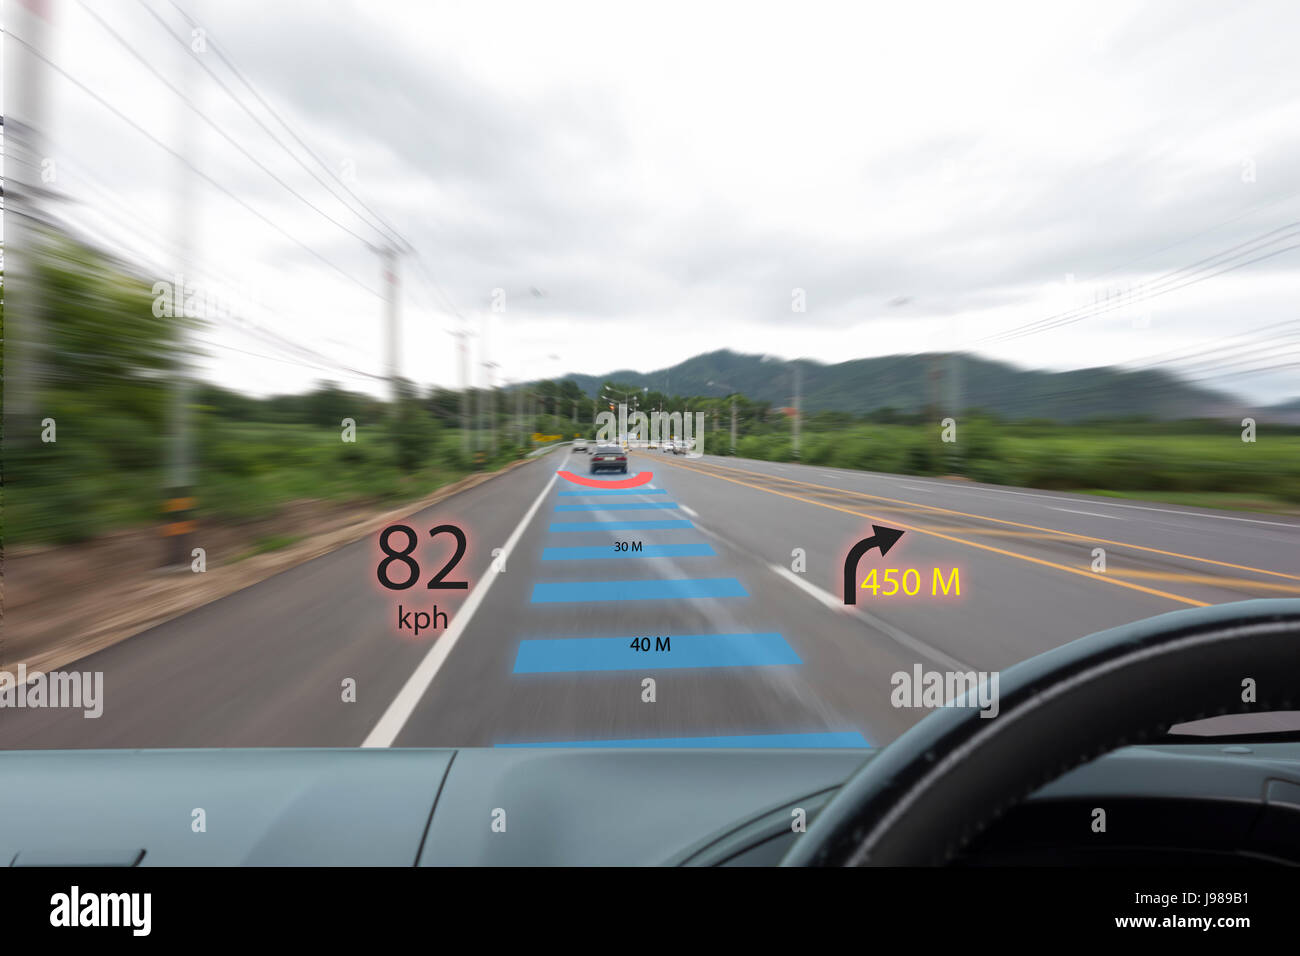 https://c8.alamy.com/compde/j989b1/iot-internet-der-dinge-smart-auto-konzepte-head-up-display-hud-auto-einsatz-augmented-realitat-zeigen-die-geschwindigkeit-navigation-den-abstand-zwischen-dem-c-j989b1.jpg